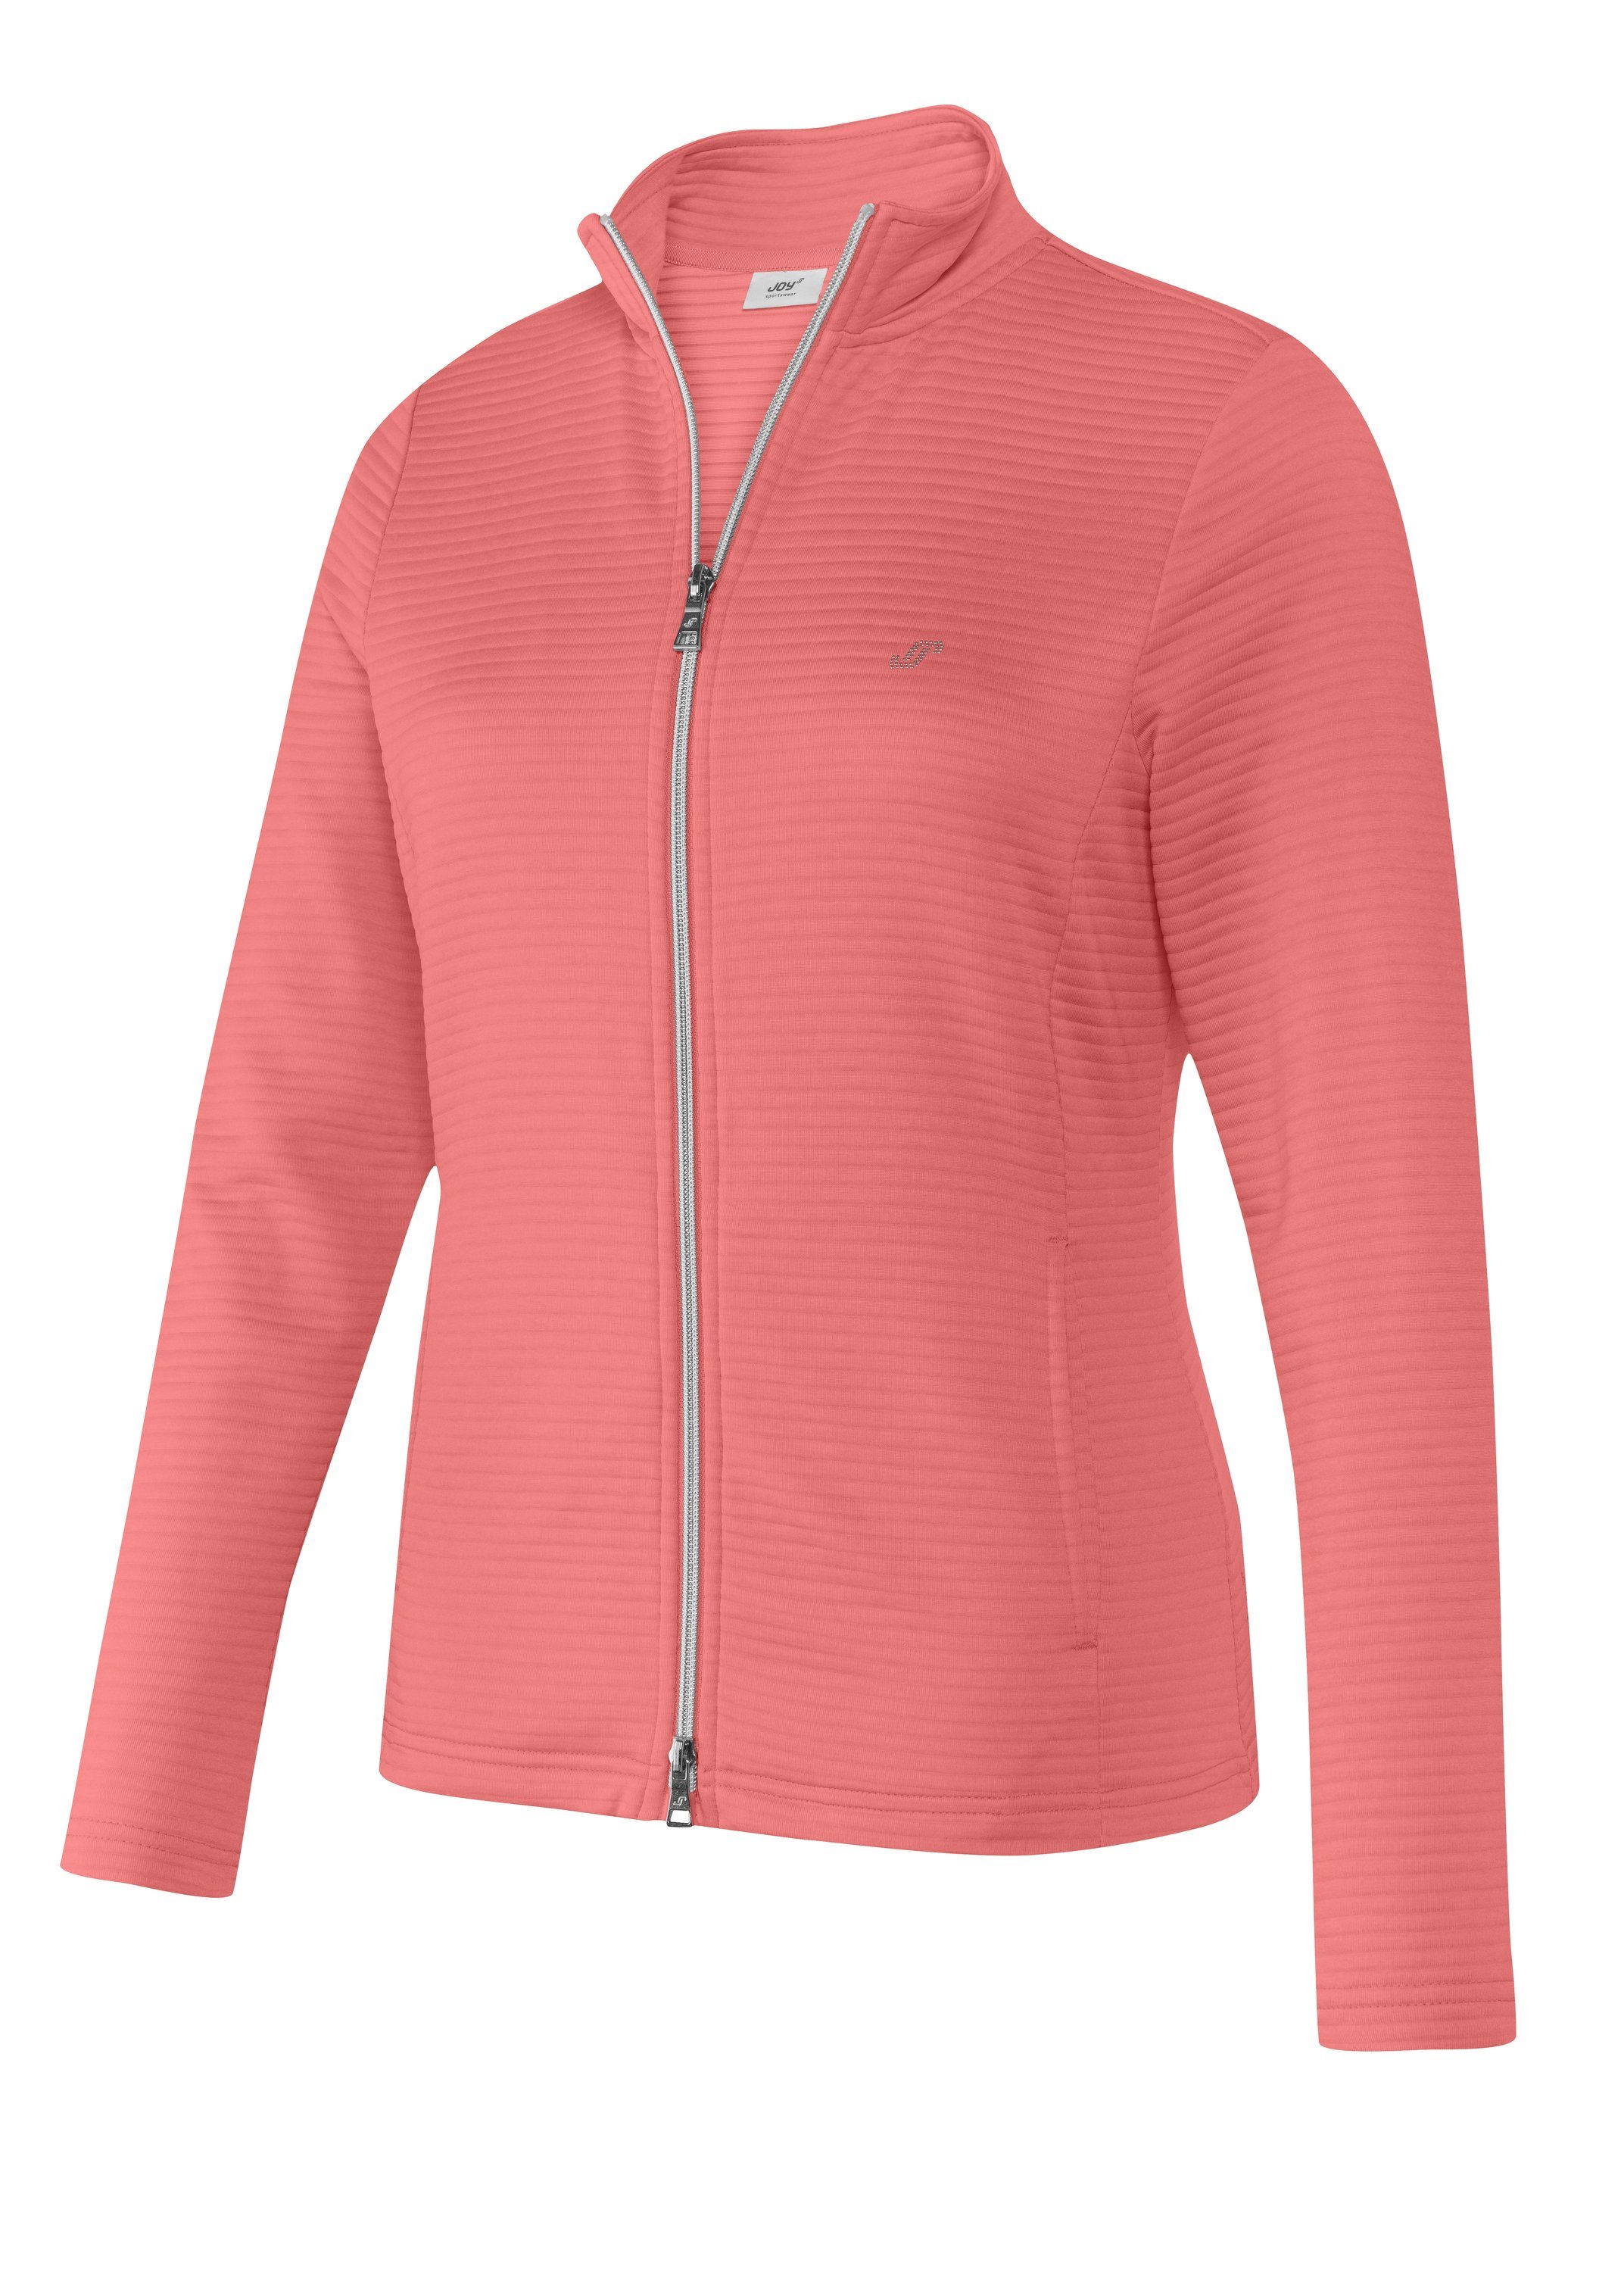 coral PEGGY Jacke Sportswear pink Trainingsjacke melange Joy